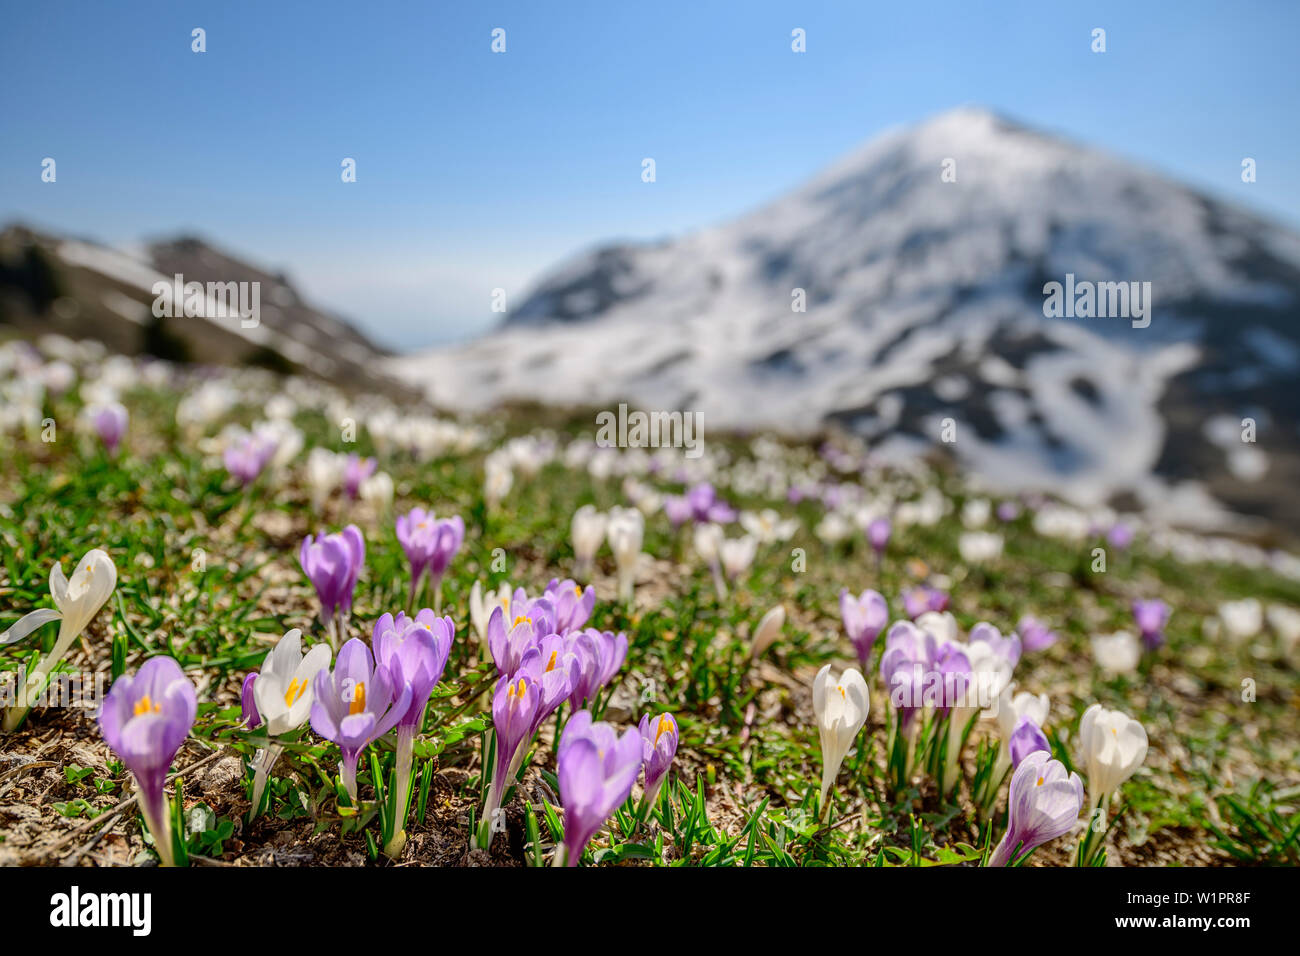 Krokusse blühen mit schneebedeckten Berg im Hintergrund, Monte Caret, Gardasee, Gardasee Berge, Trentino, Italien Stockfoto